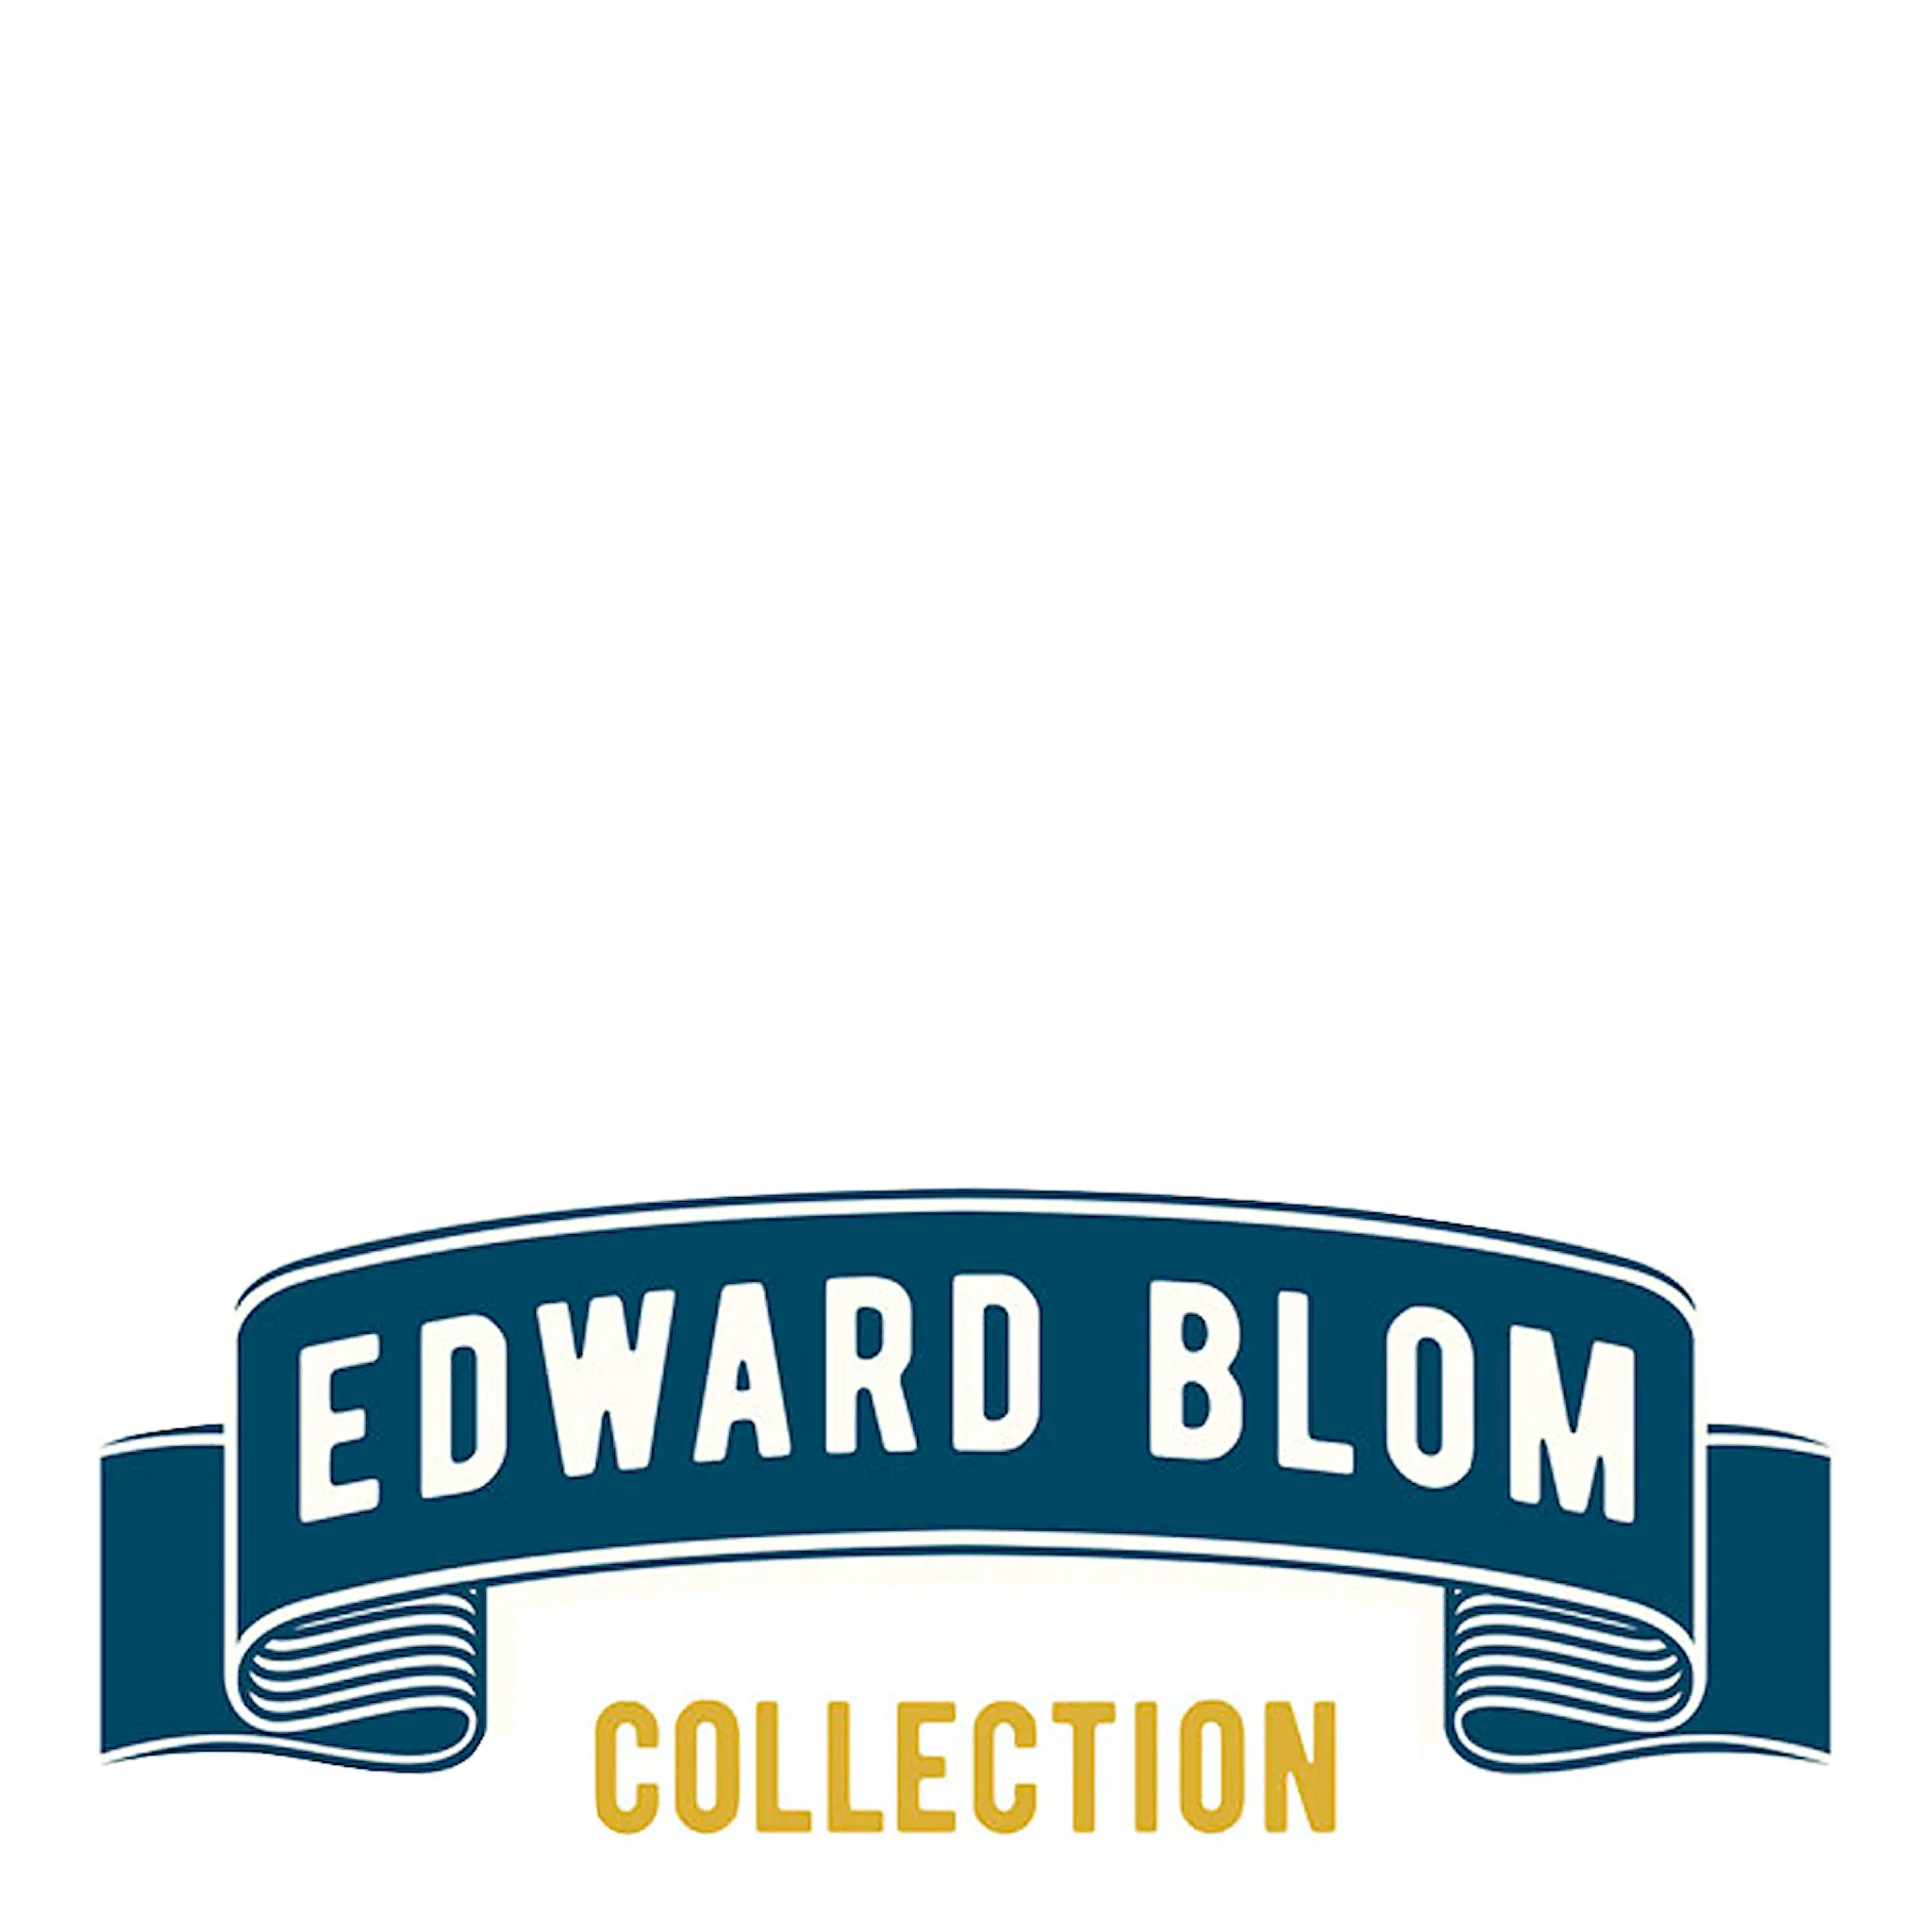 Edward Blom Collection ølglass No 5: Det viktiga är